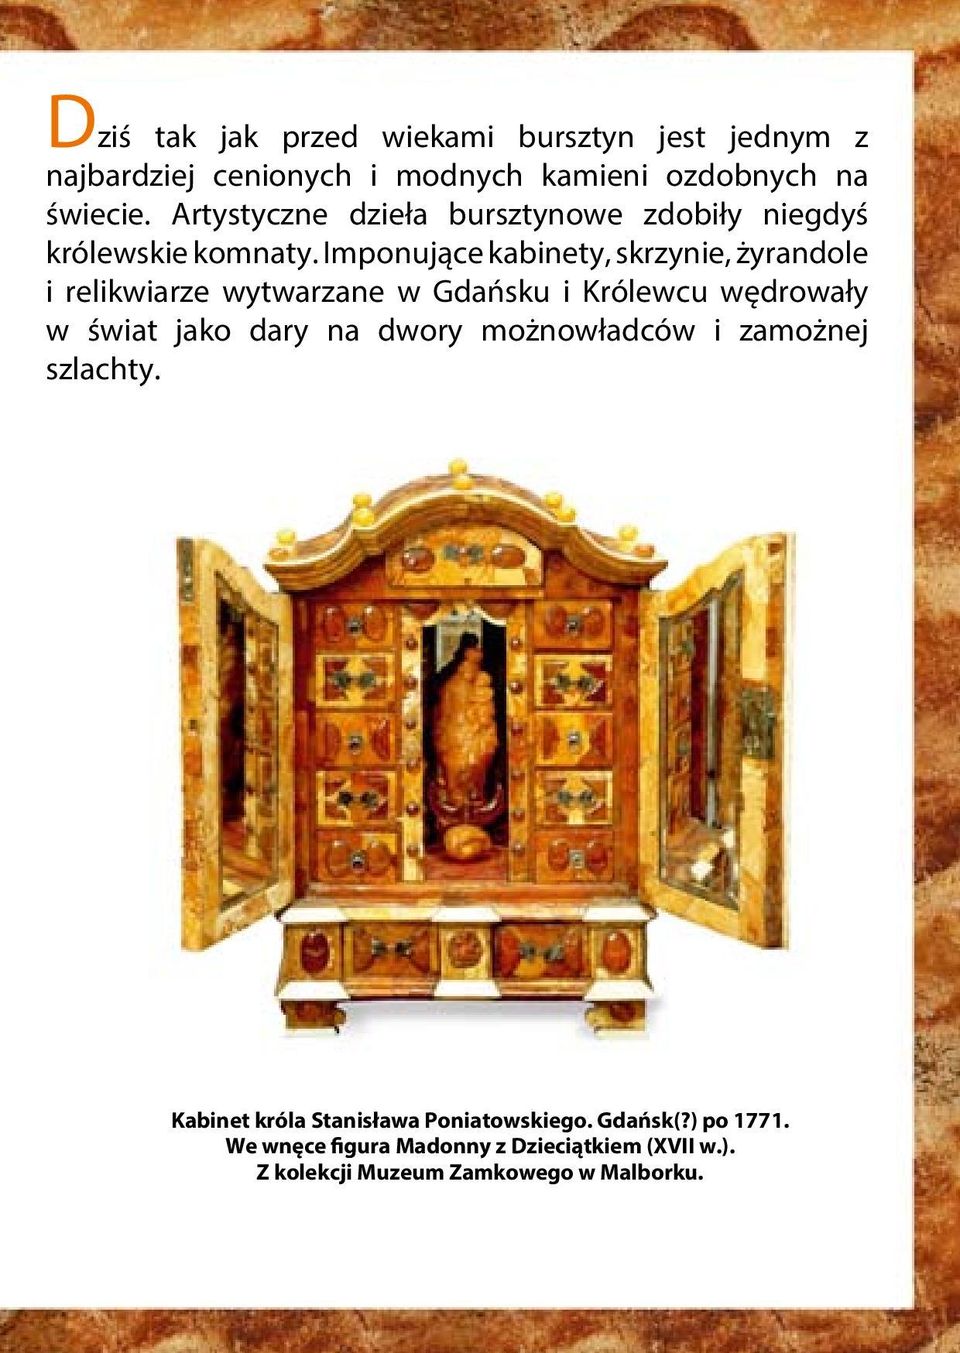 Imponujące kabinety, skrzynie, żyrandole i relikwiarze wytwarzane w Gdańsku i Królewcu wędrowały w świat jako dary na